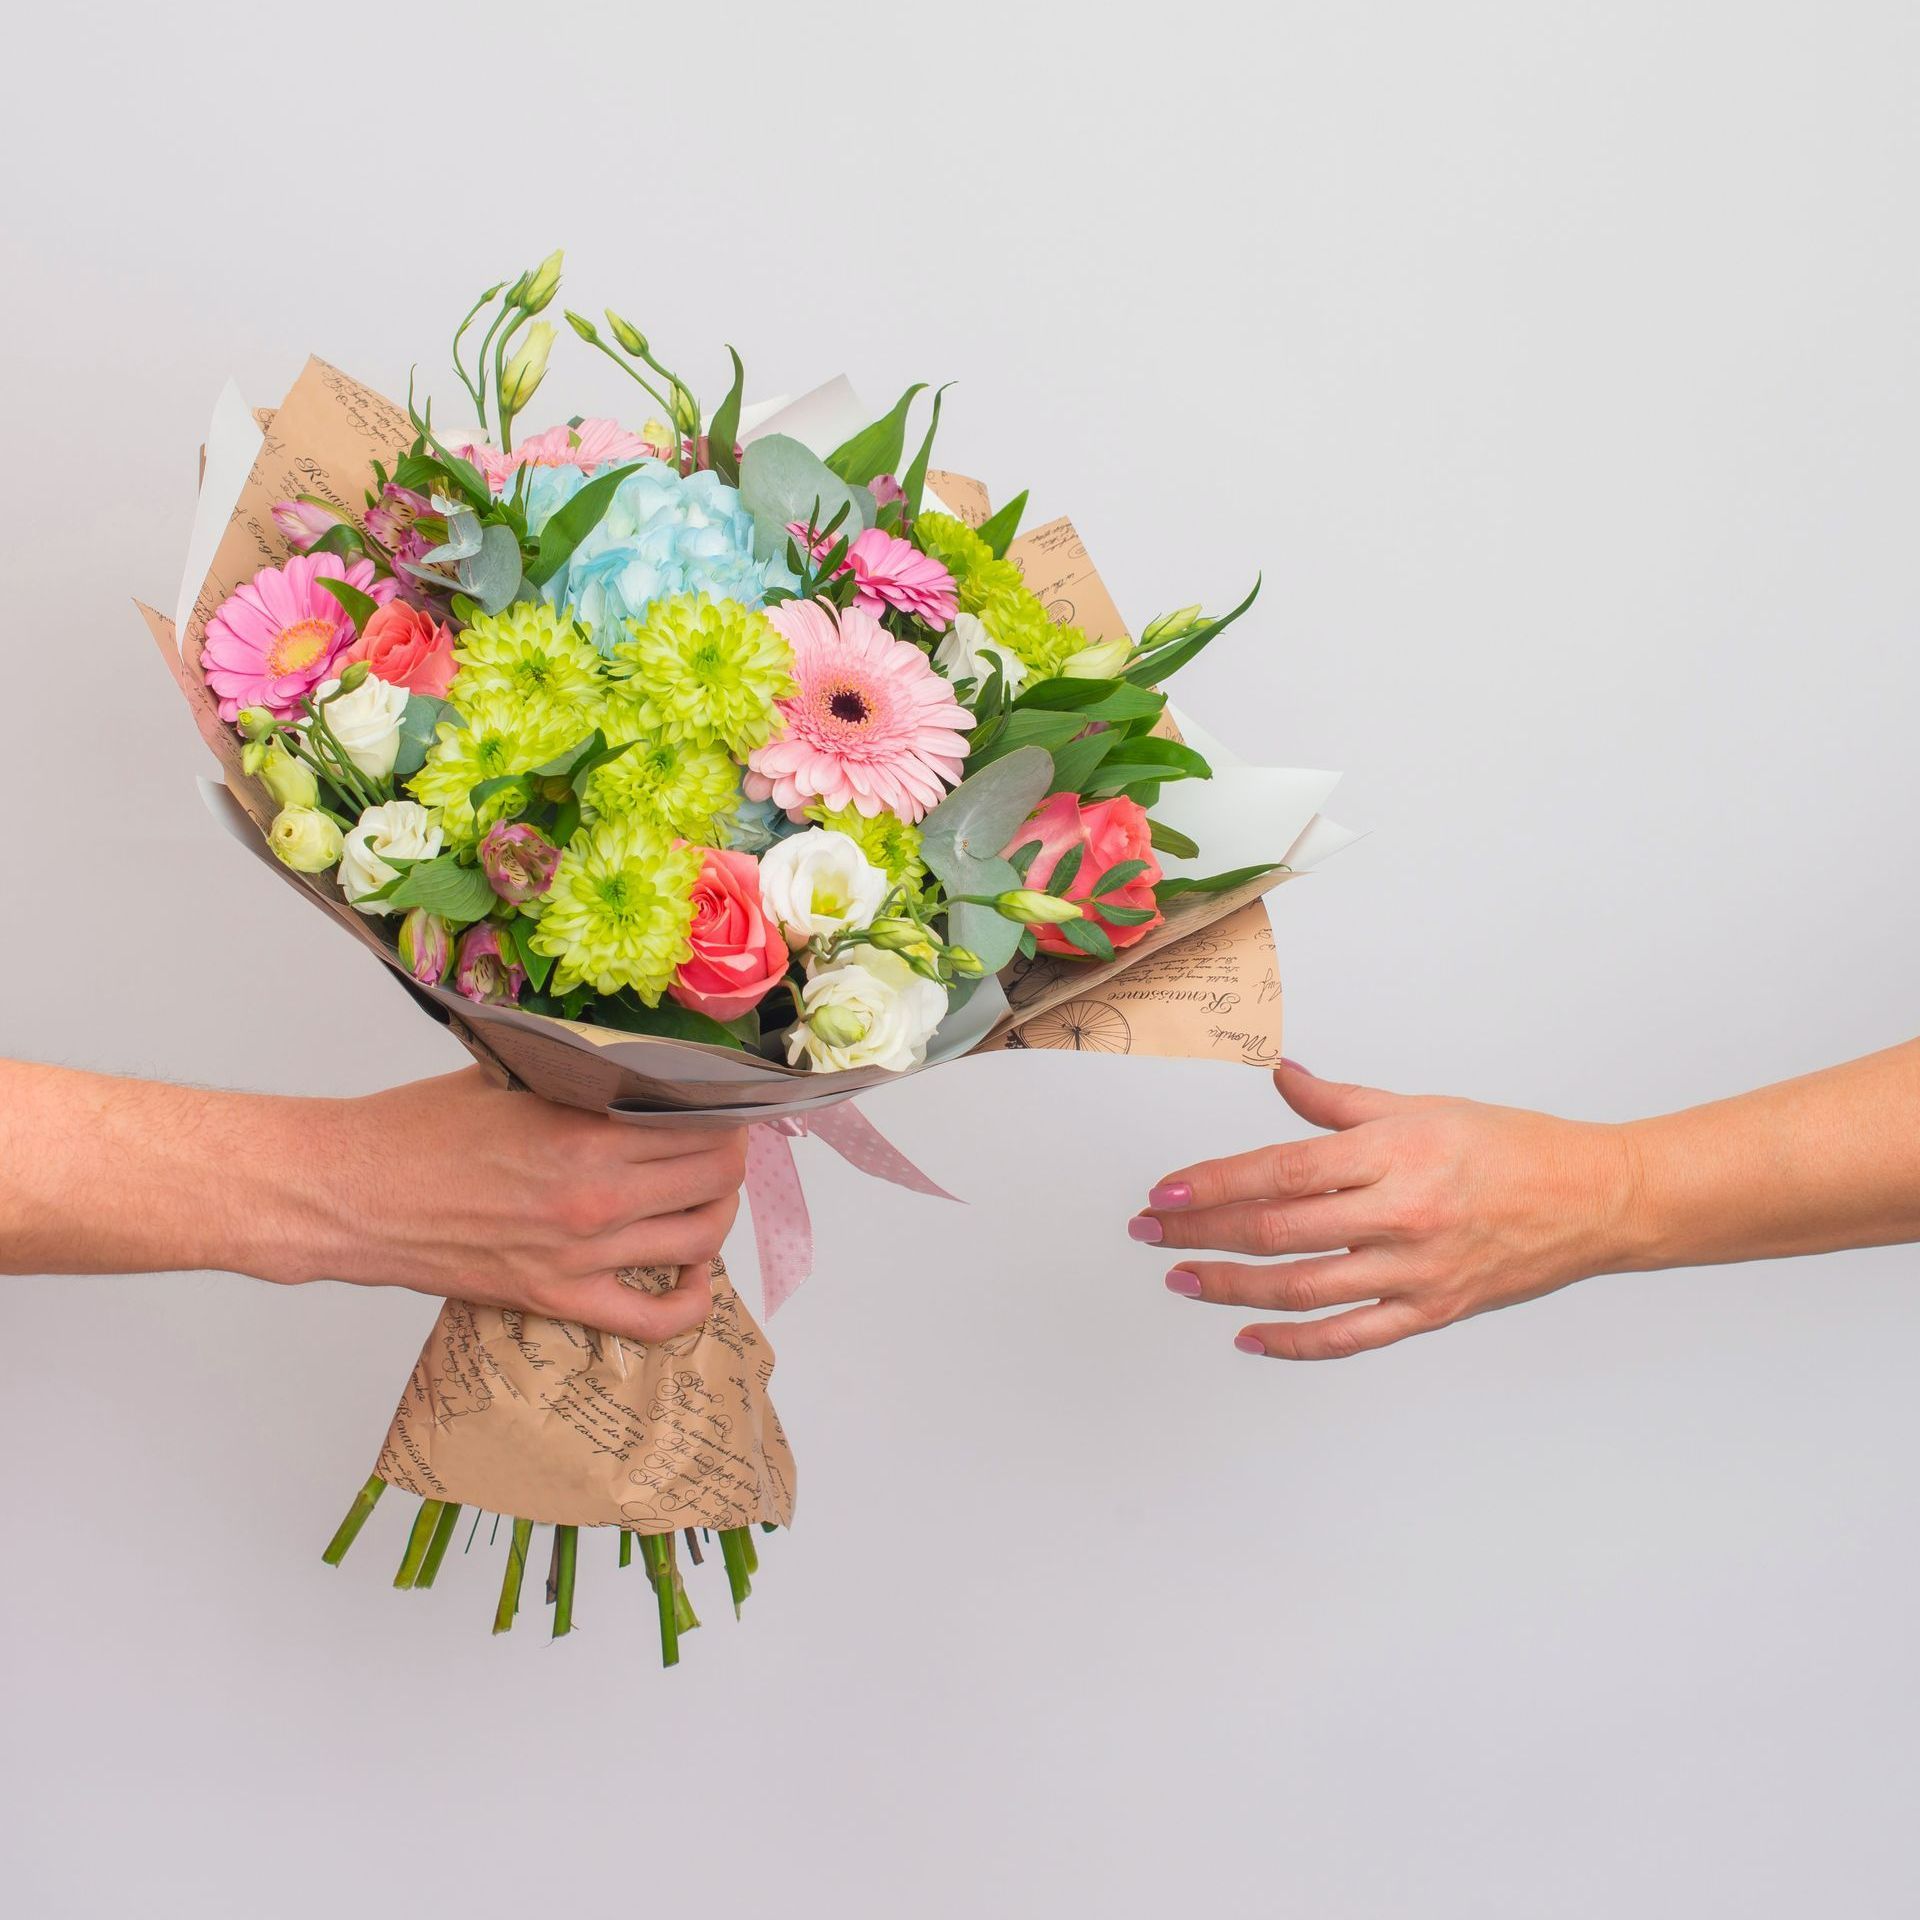 Une personne tend un bouquet de fleurs à une autre personne